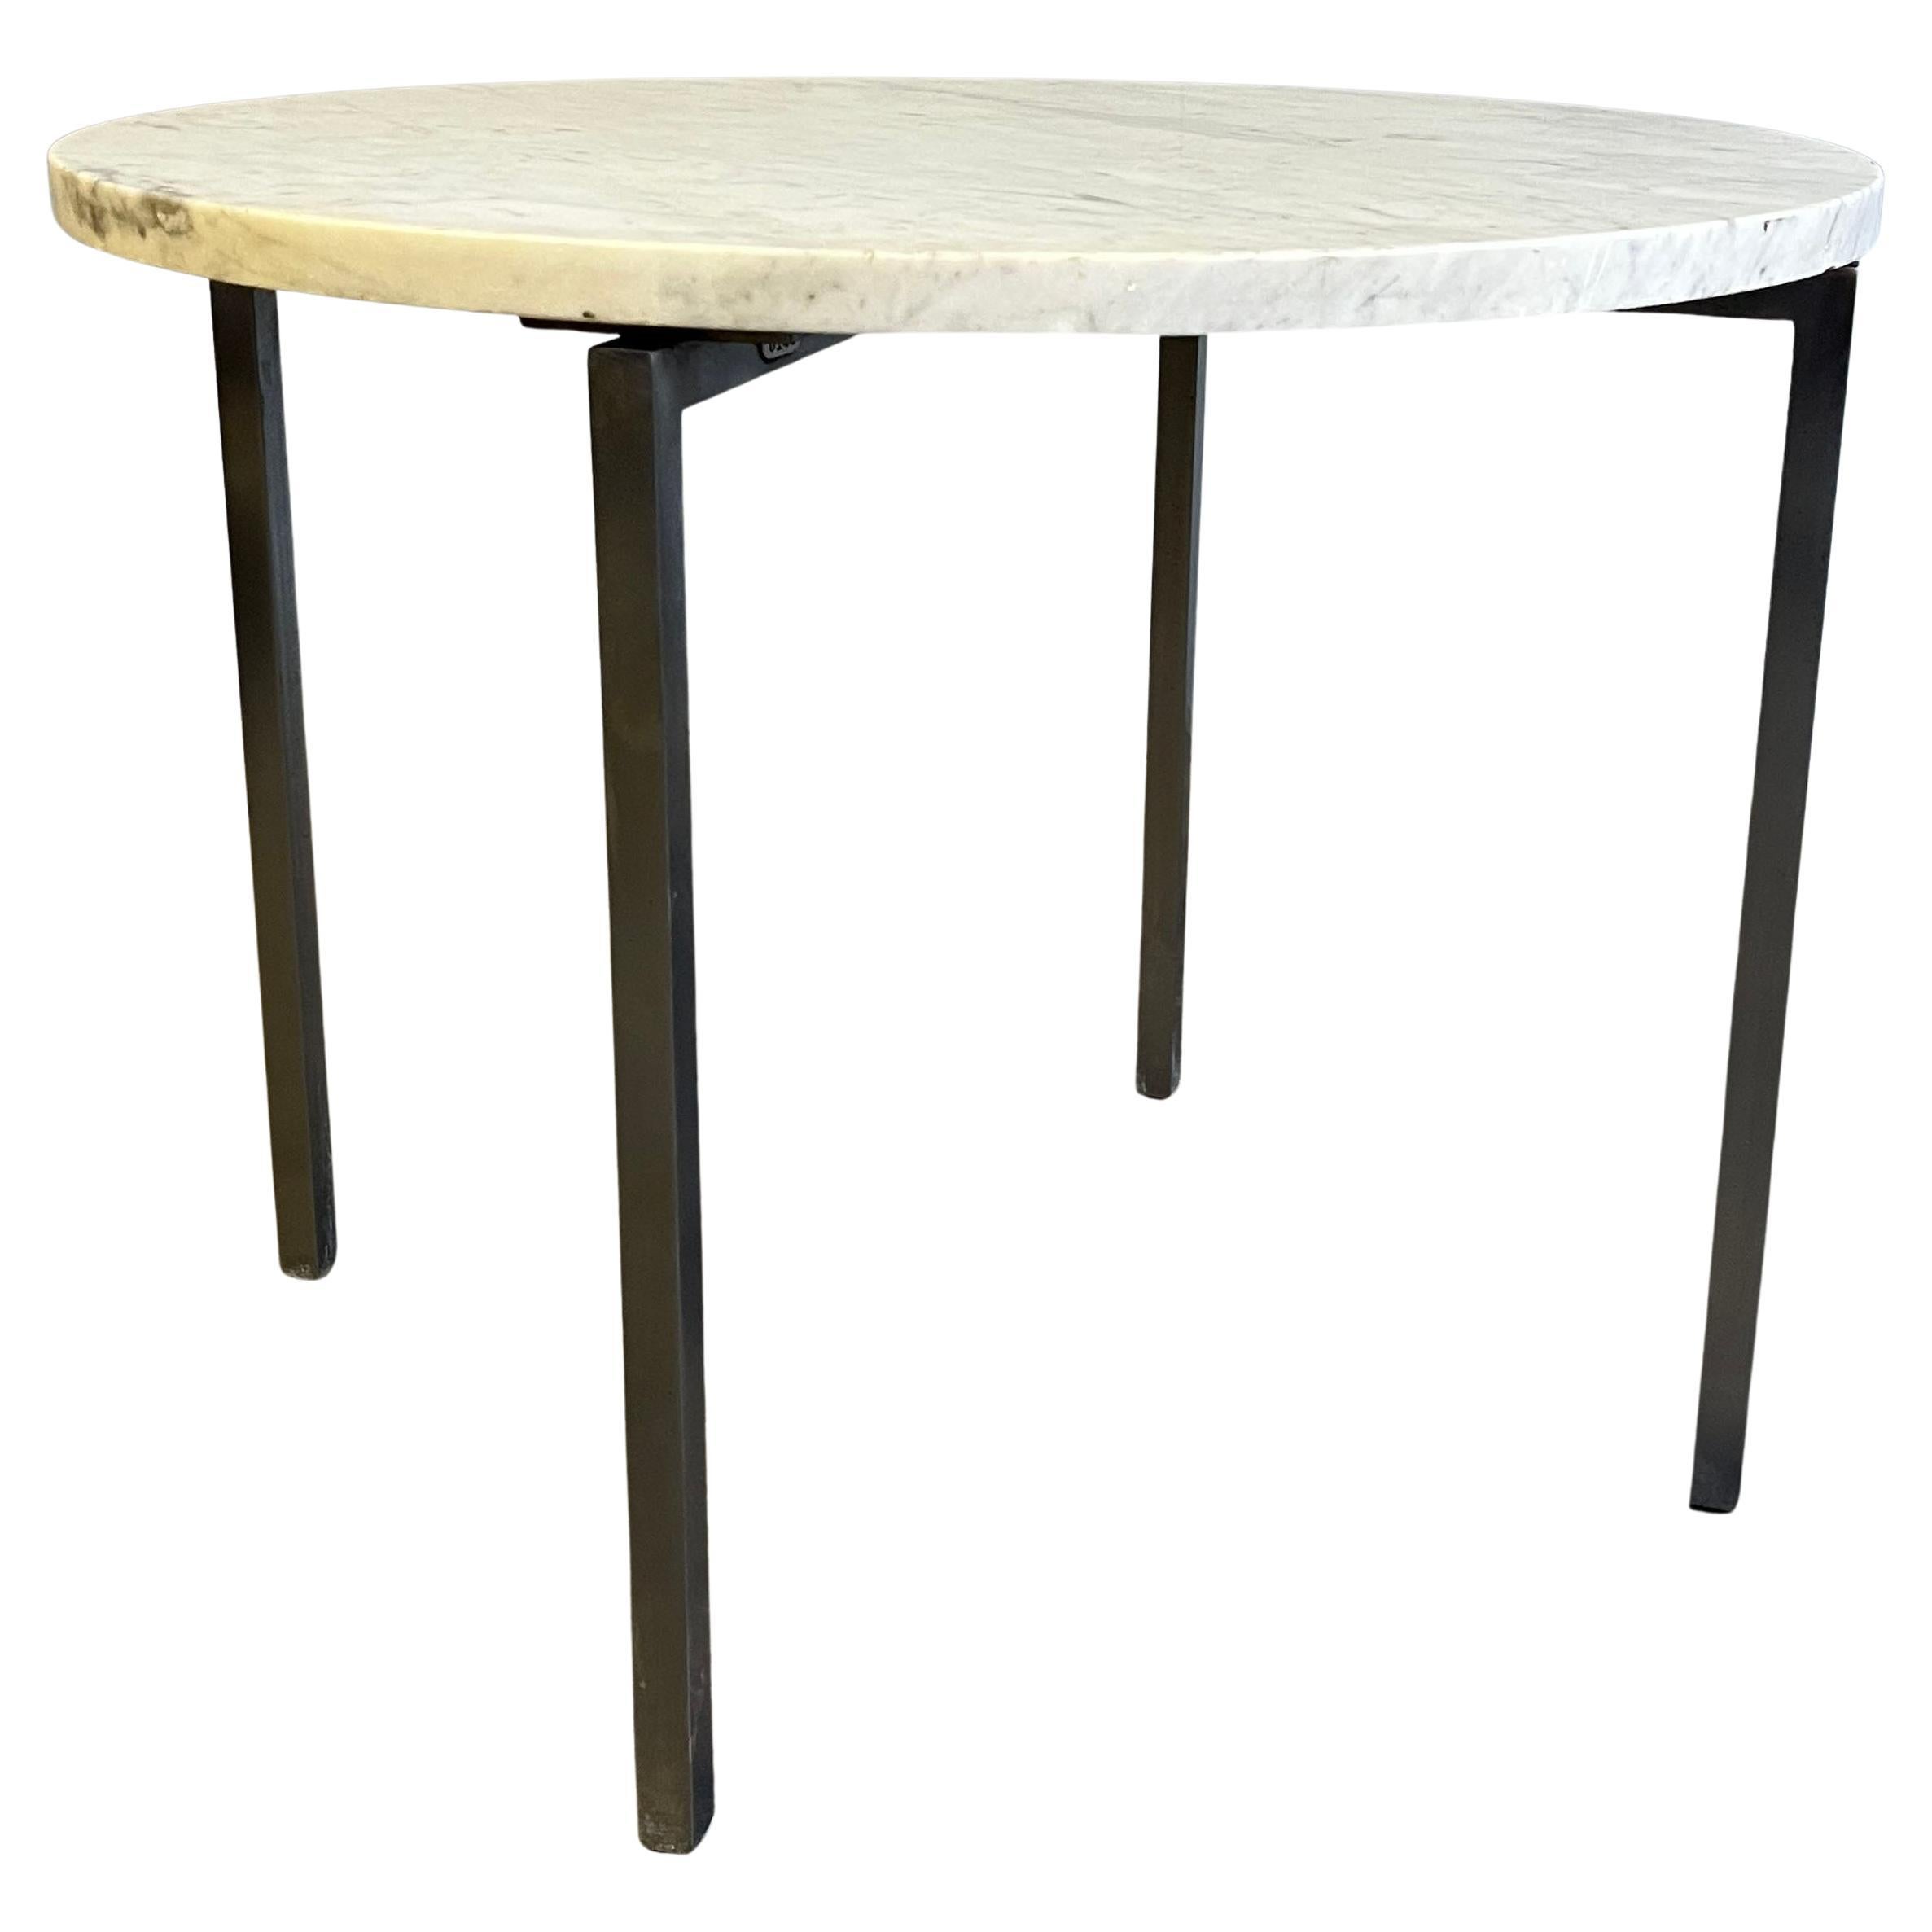 Belle table ronde avec base en chrome ou nickel brossé. Rarement vu, une table ronde de grandes dimensions qui pourrait également être utilisée comme petite table basse. 

Le marbre est original et  montre des signes d'utilisation avec quelques